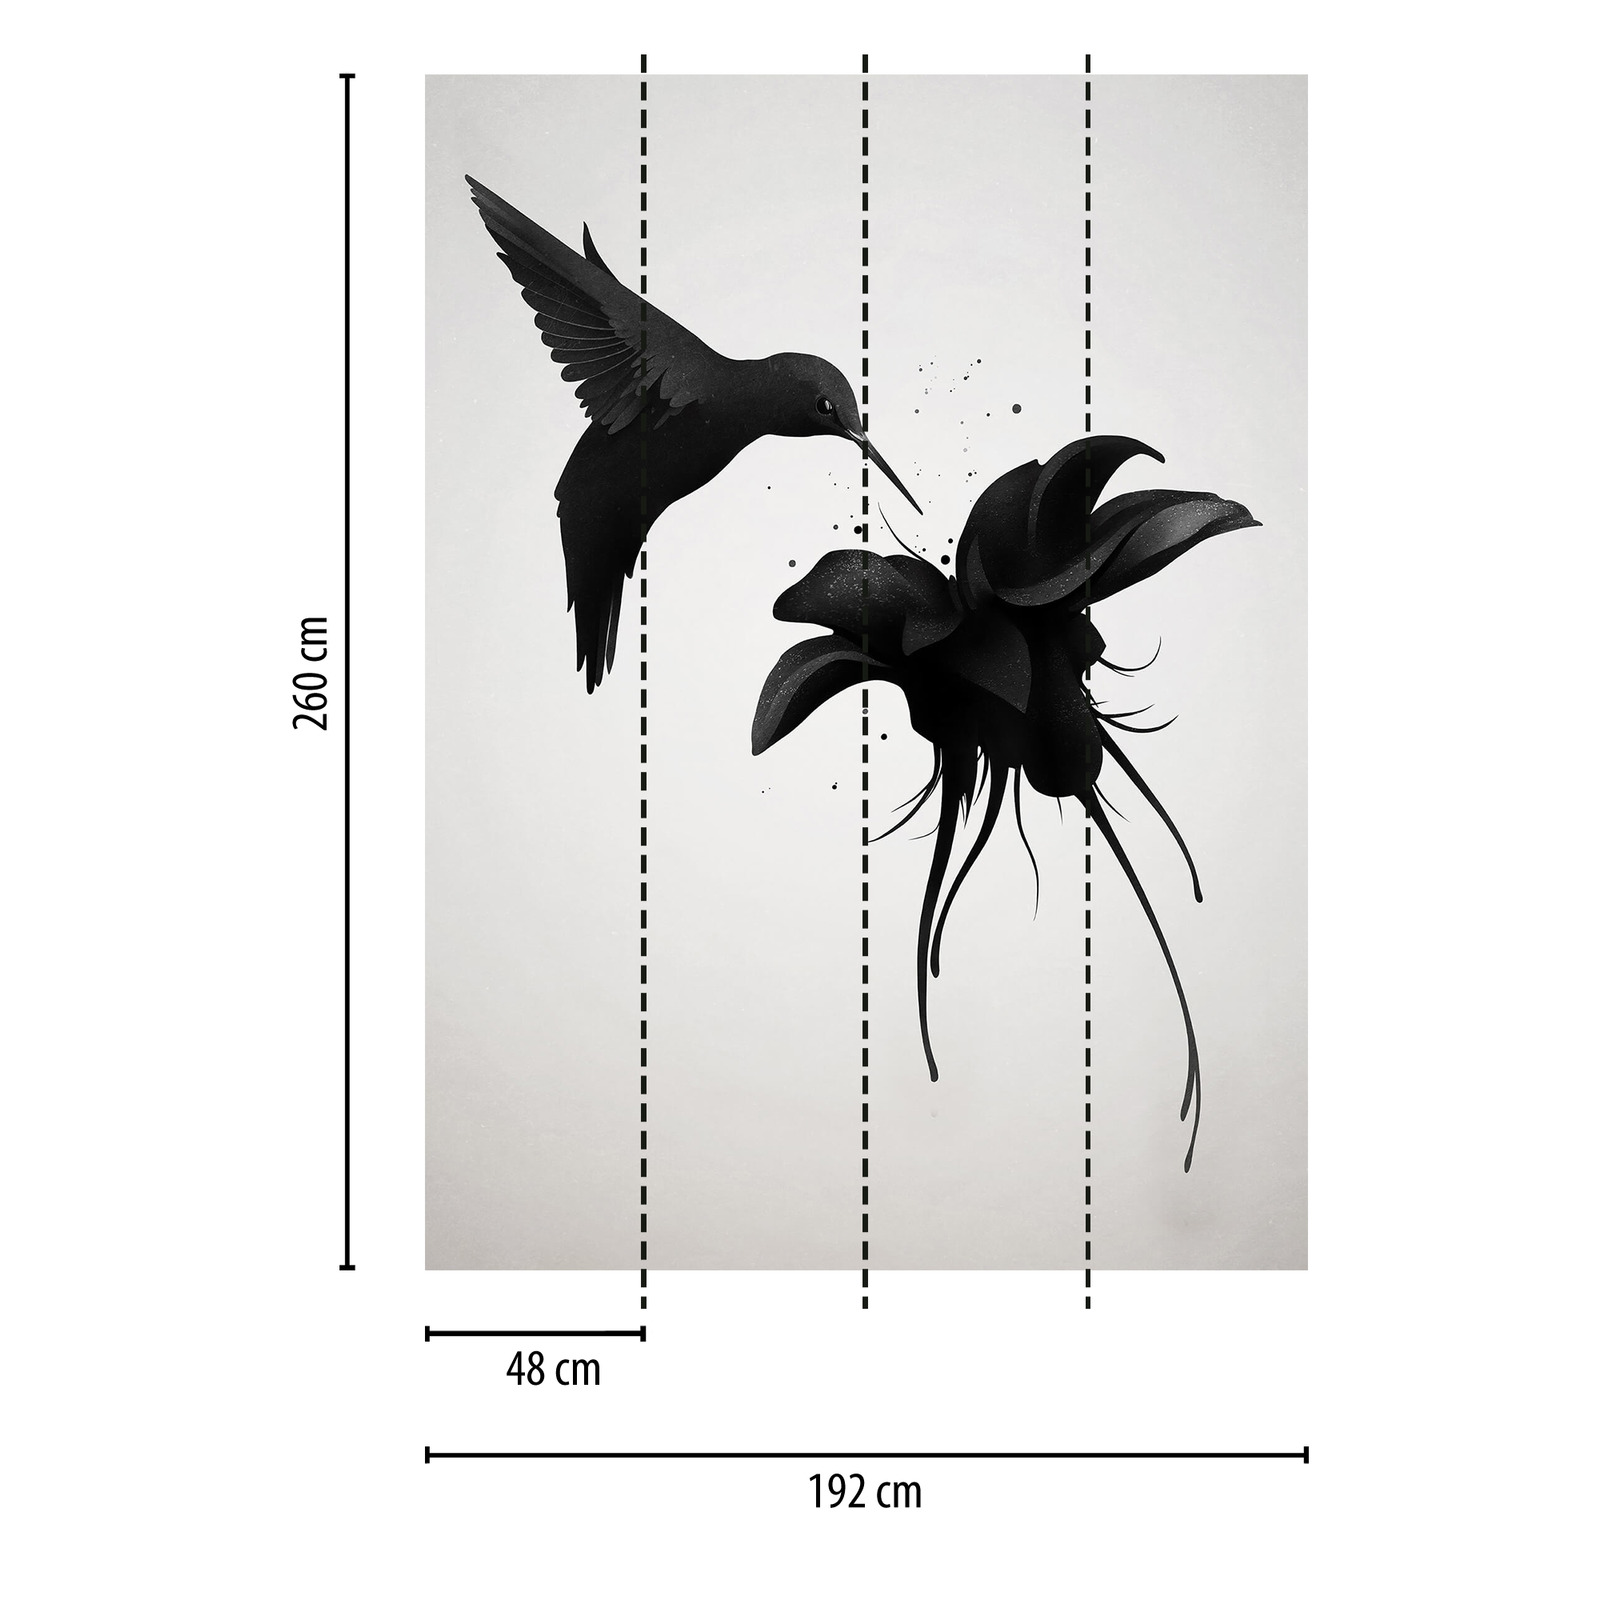             Photo wallpaper bird on flower - black, white
        